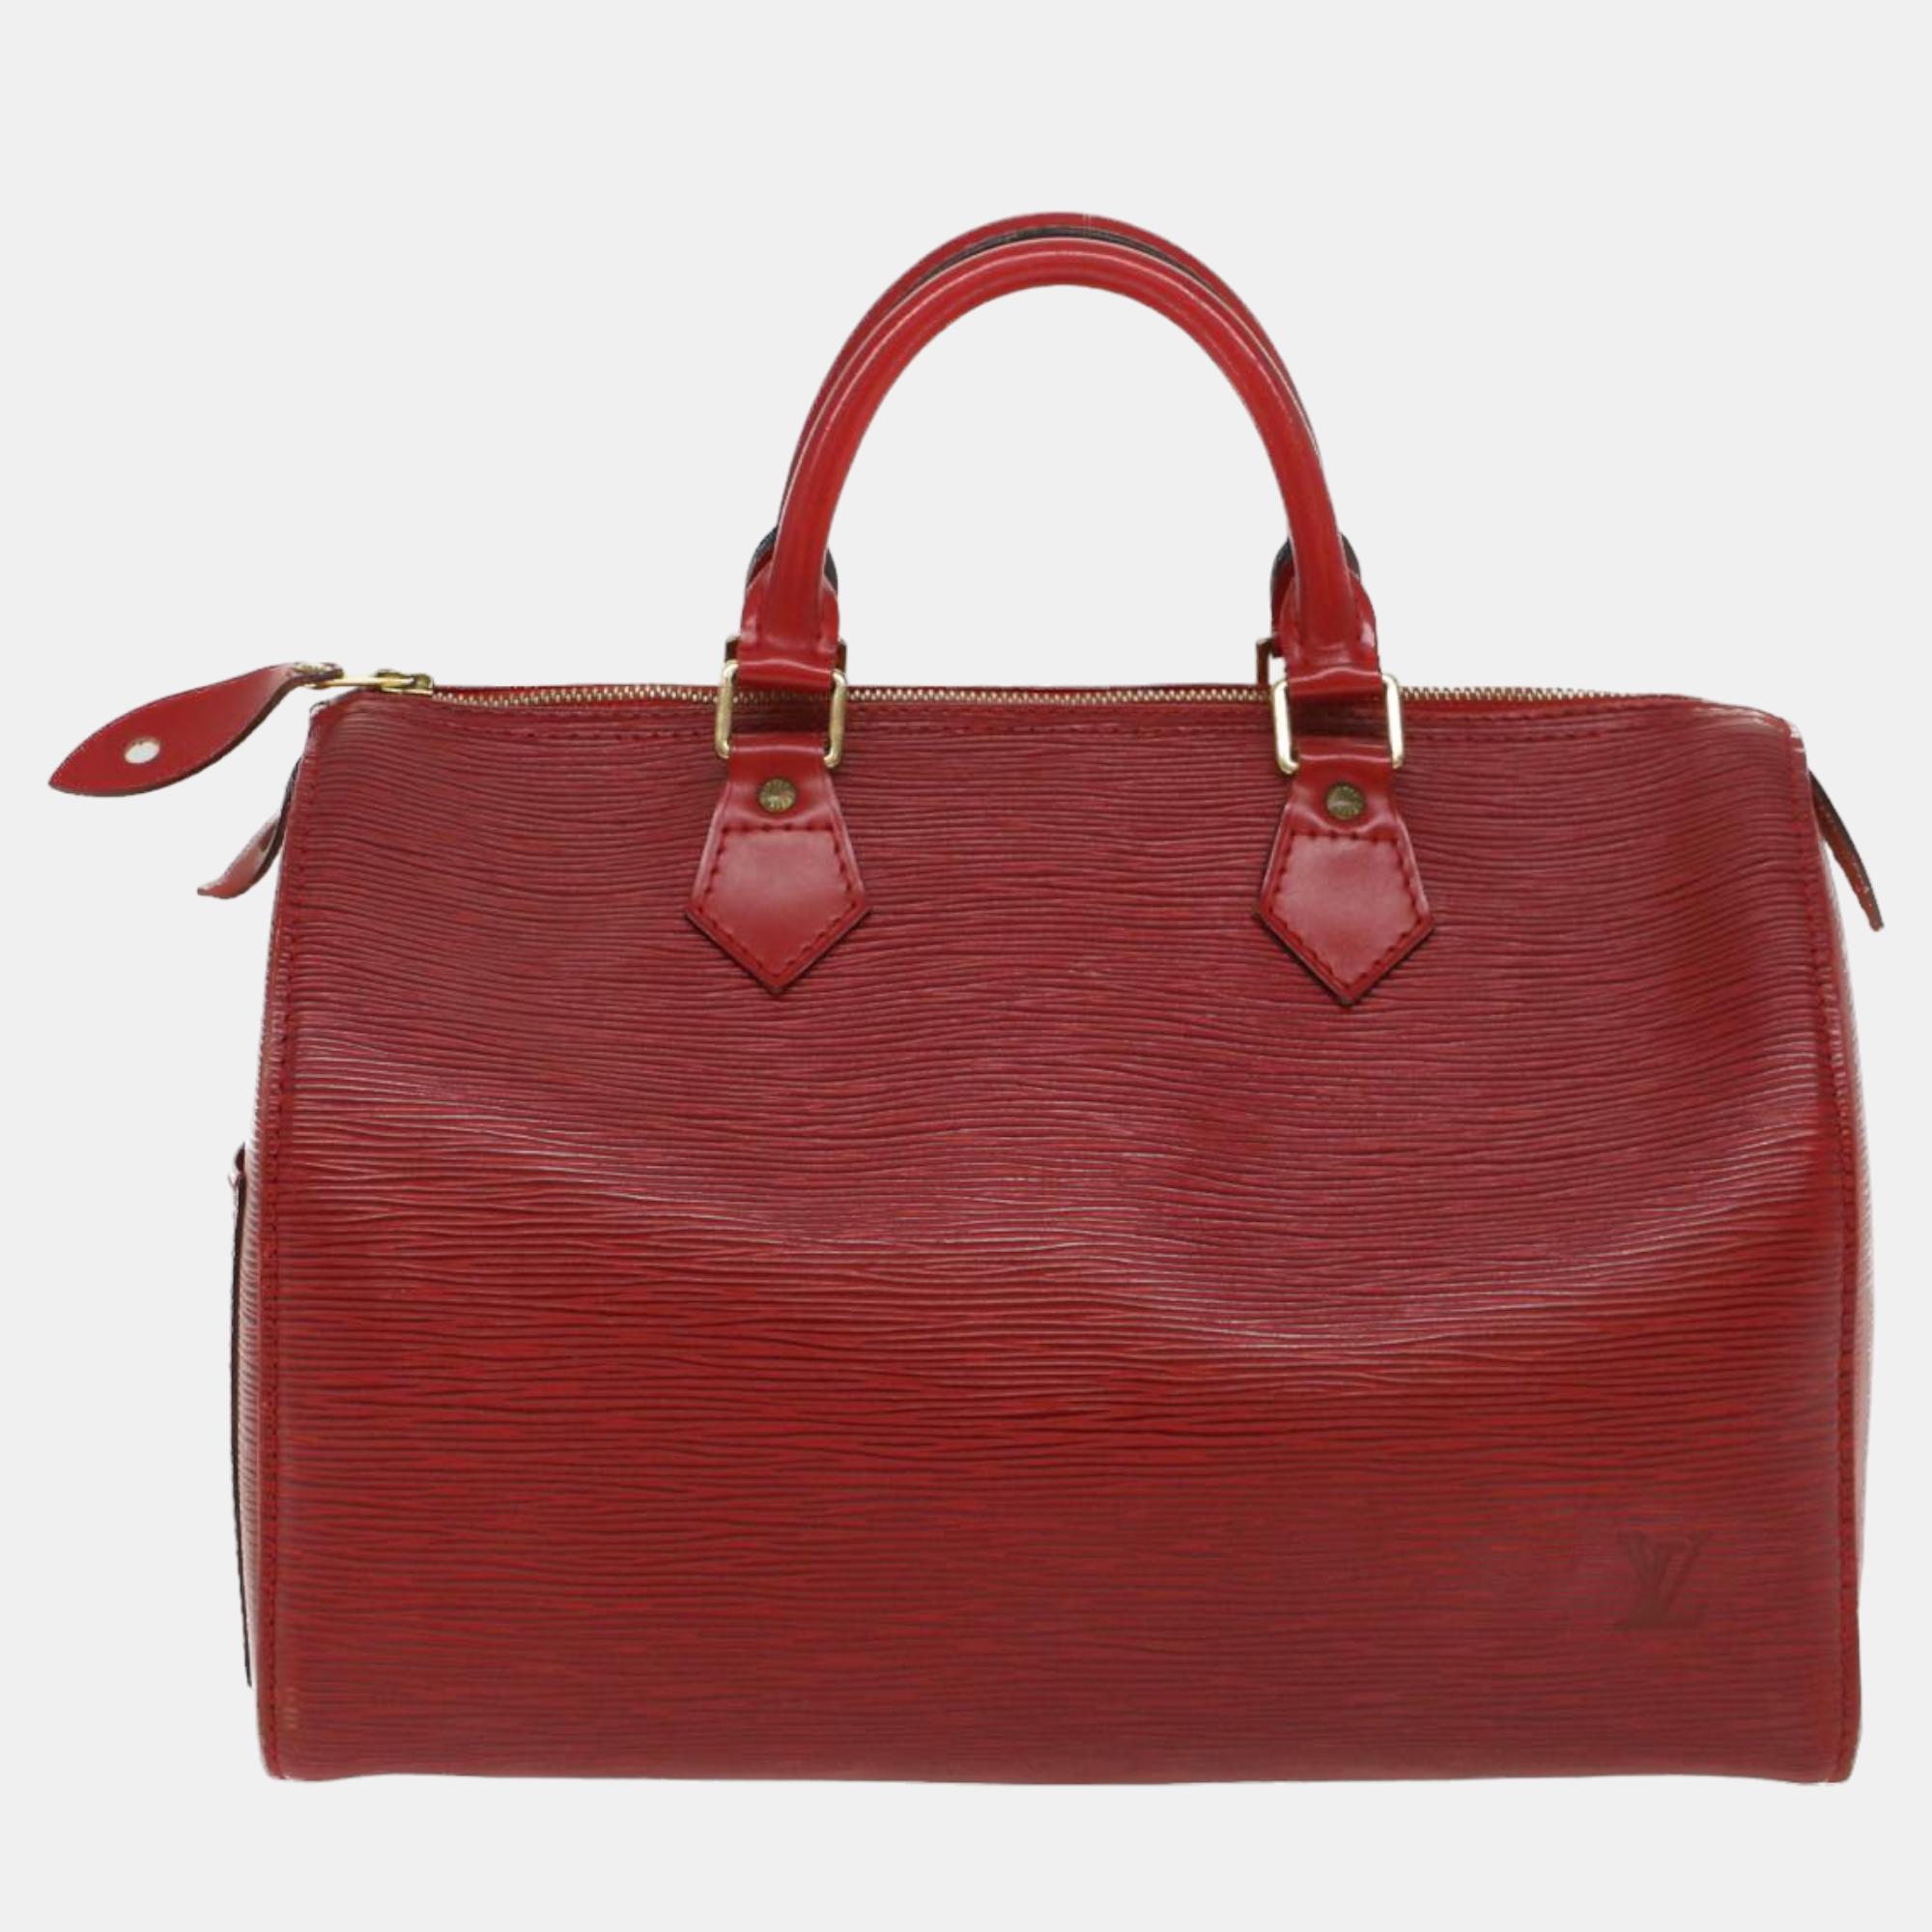 

Louis Vuitton Red Epi Leather Speedy Bag